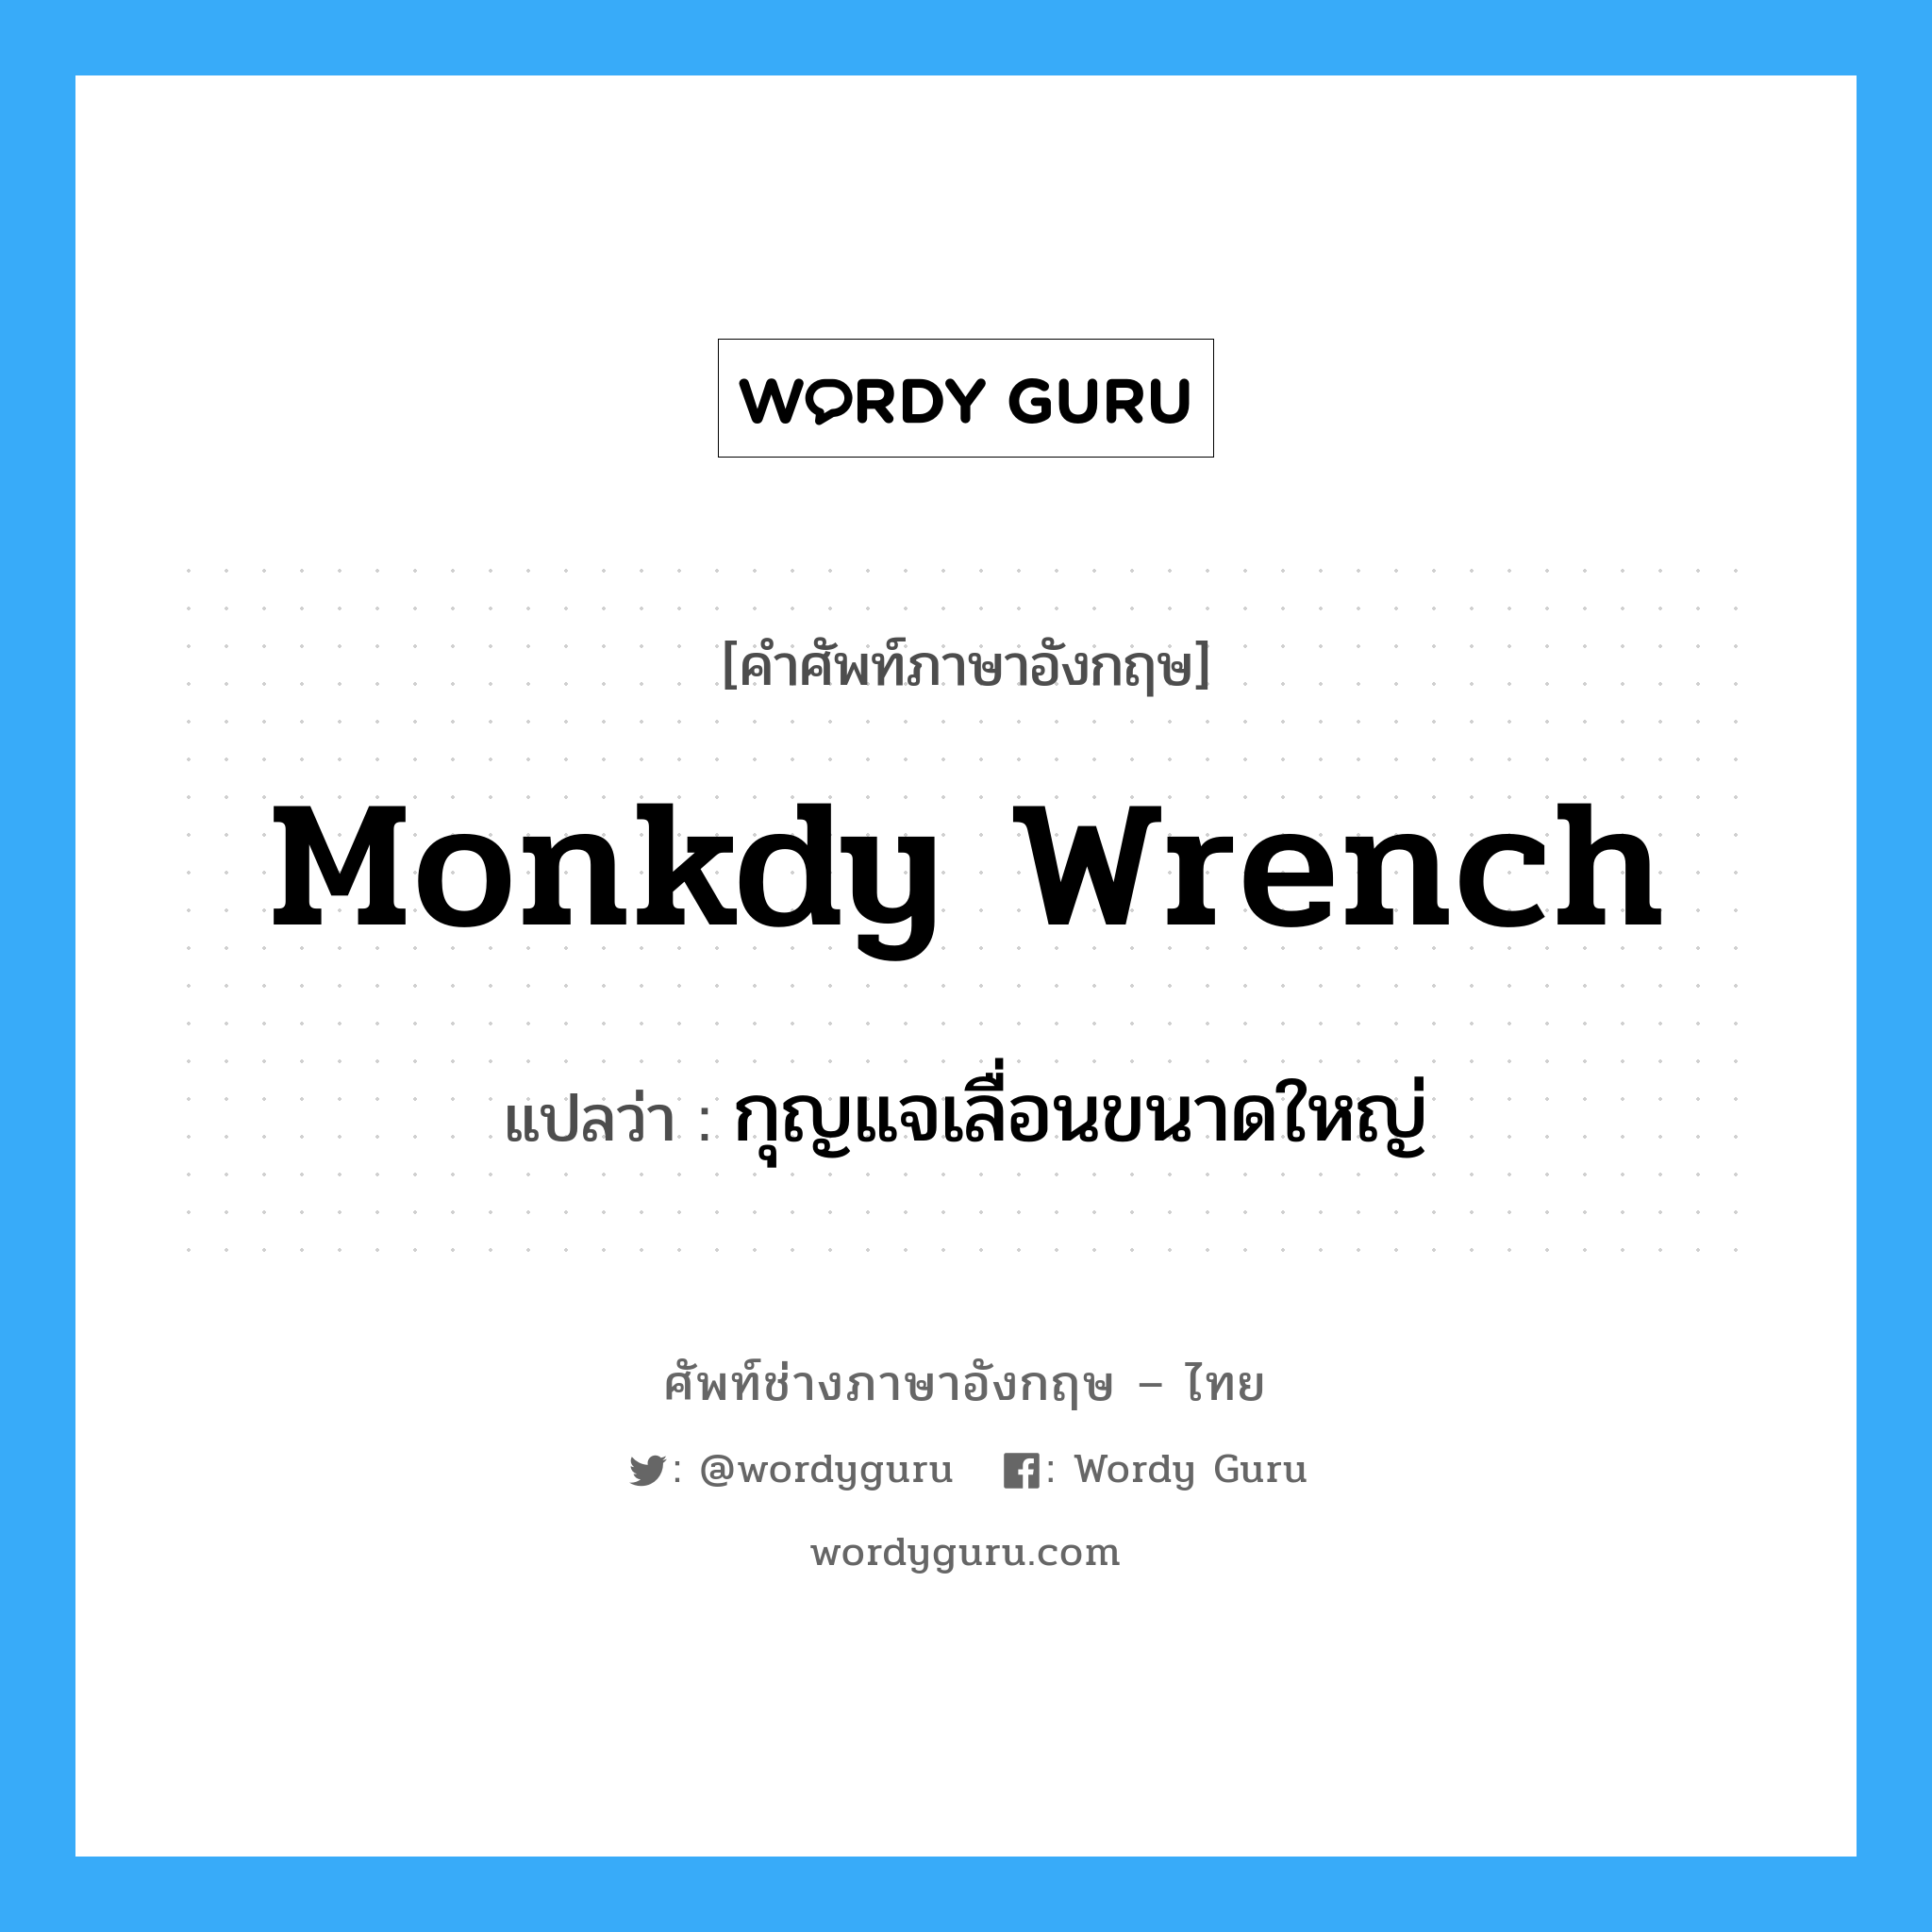 monkdy wrench แปลว่า?, คำศัพท์ช่างภาษาอังกฤษ - ไทย monkdy wrench คำศัพท์ภาษาอังกฤษ monkdy wrench แปลว่า กุญแจเลื่อนขนาดใหญ่